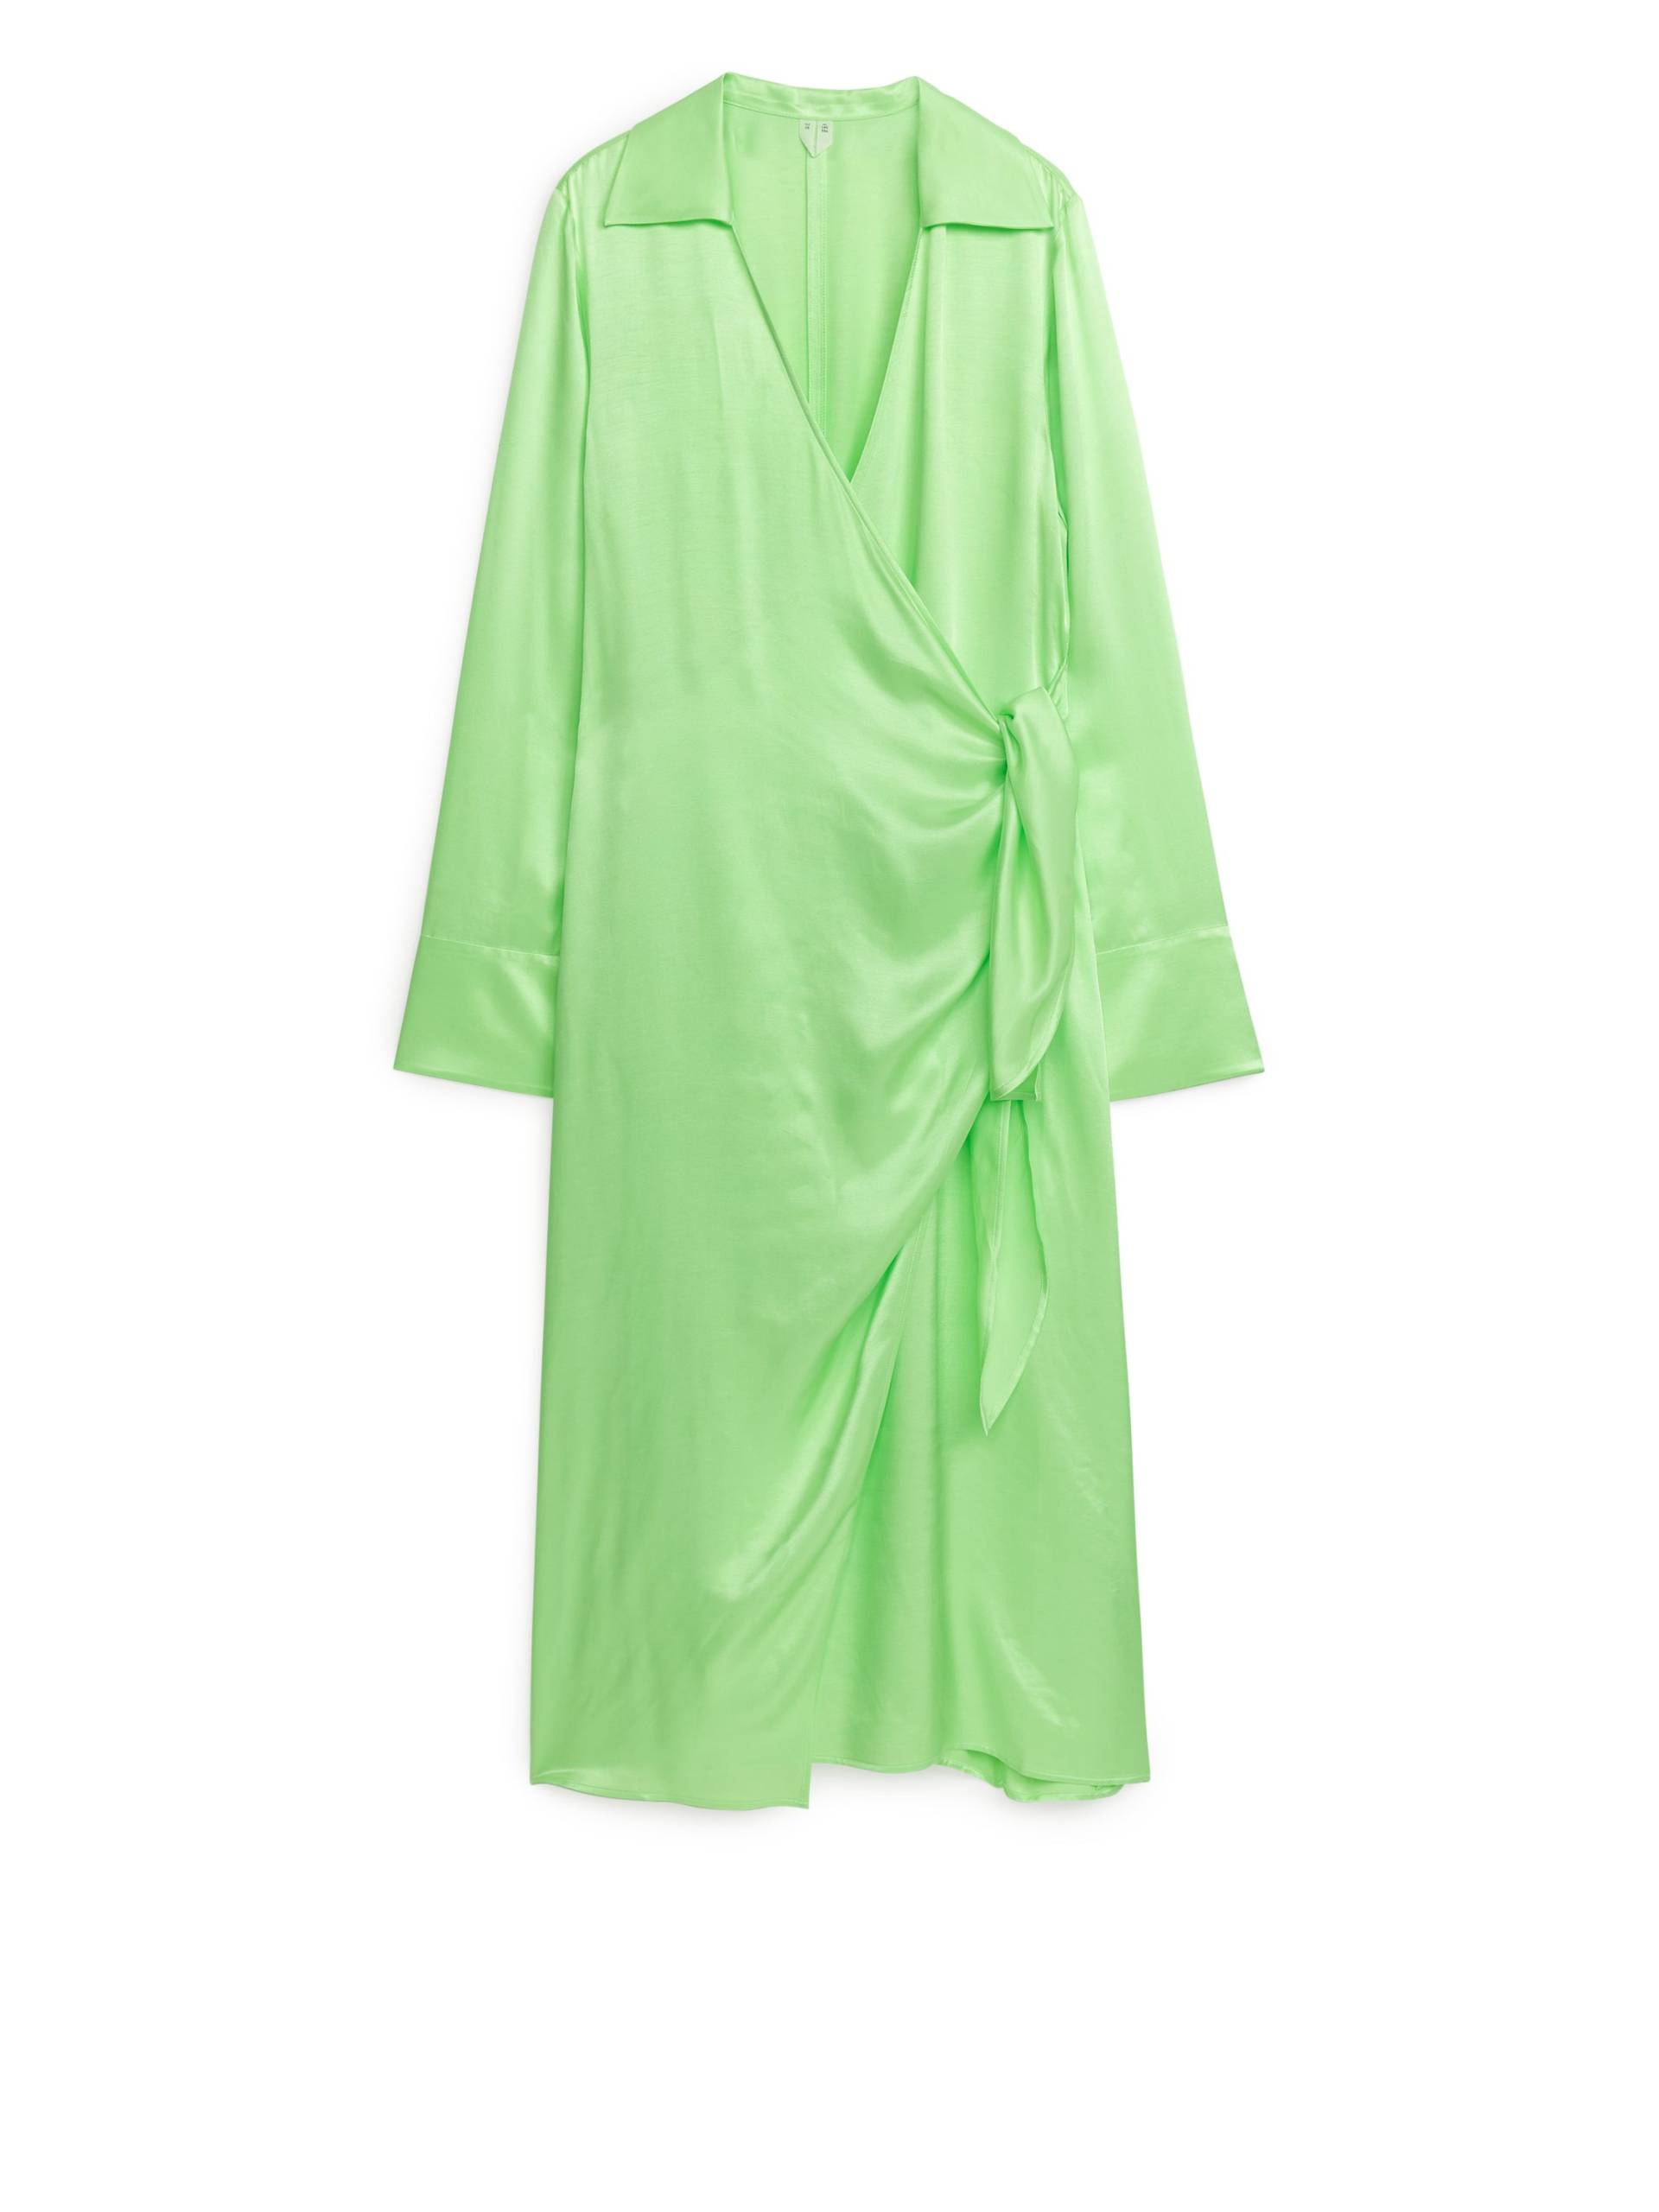 Arket Wickelkleid Hellgrün, Party kleider in Größe 36. Farbe: Light green von Arket